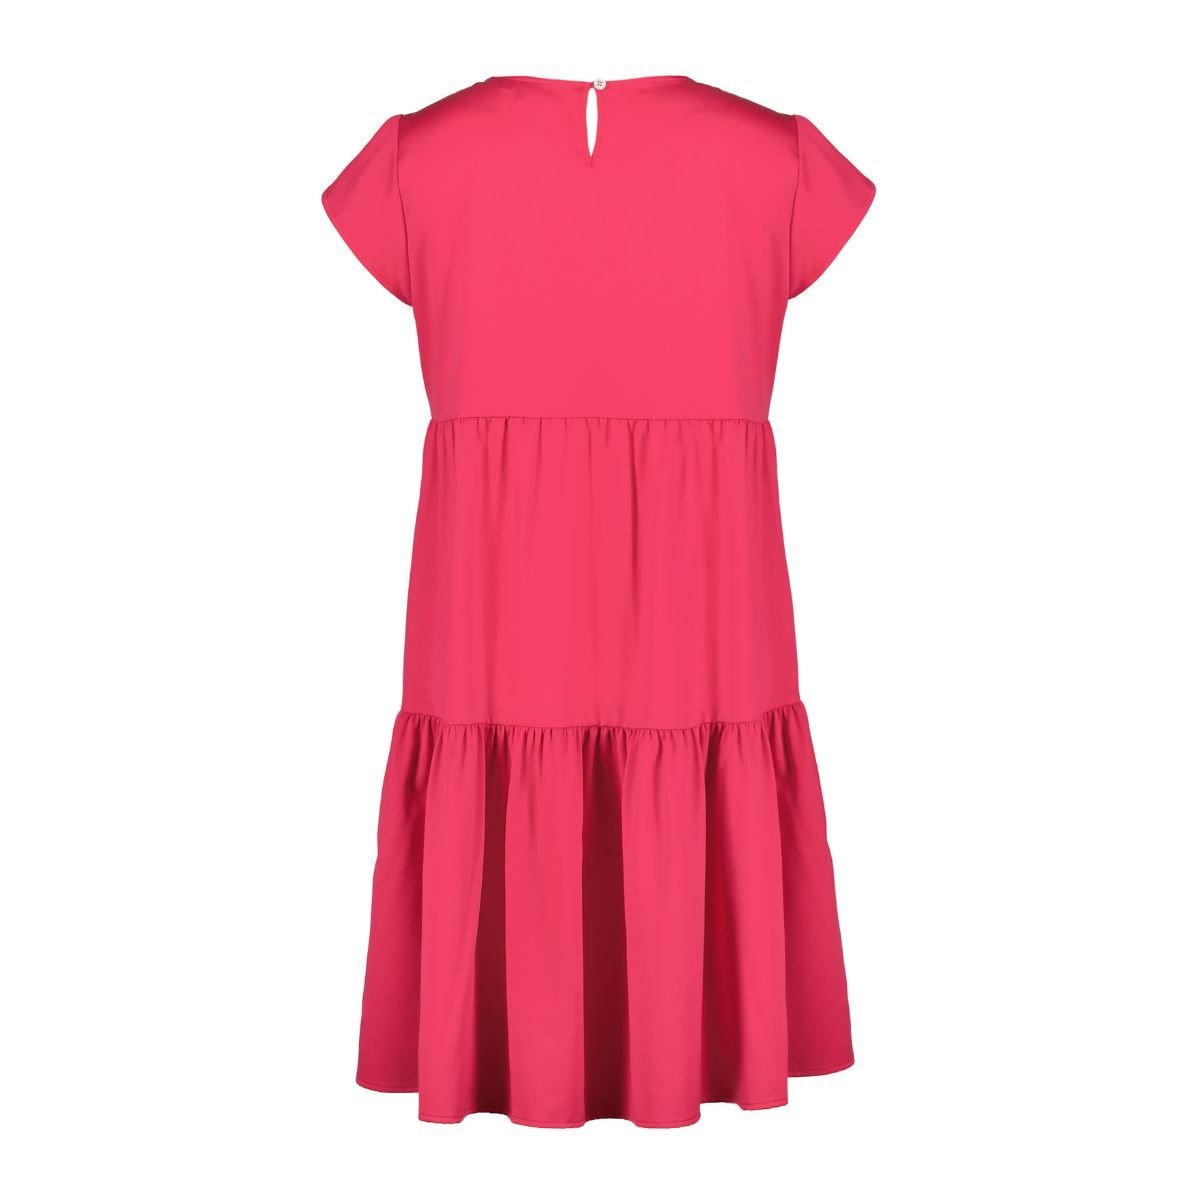 Šaty Luhta Hasala W - ružové